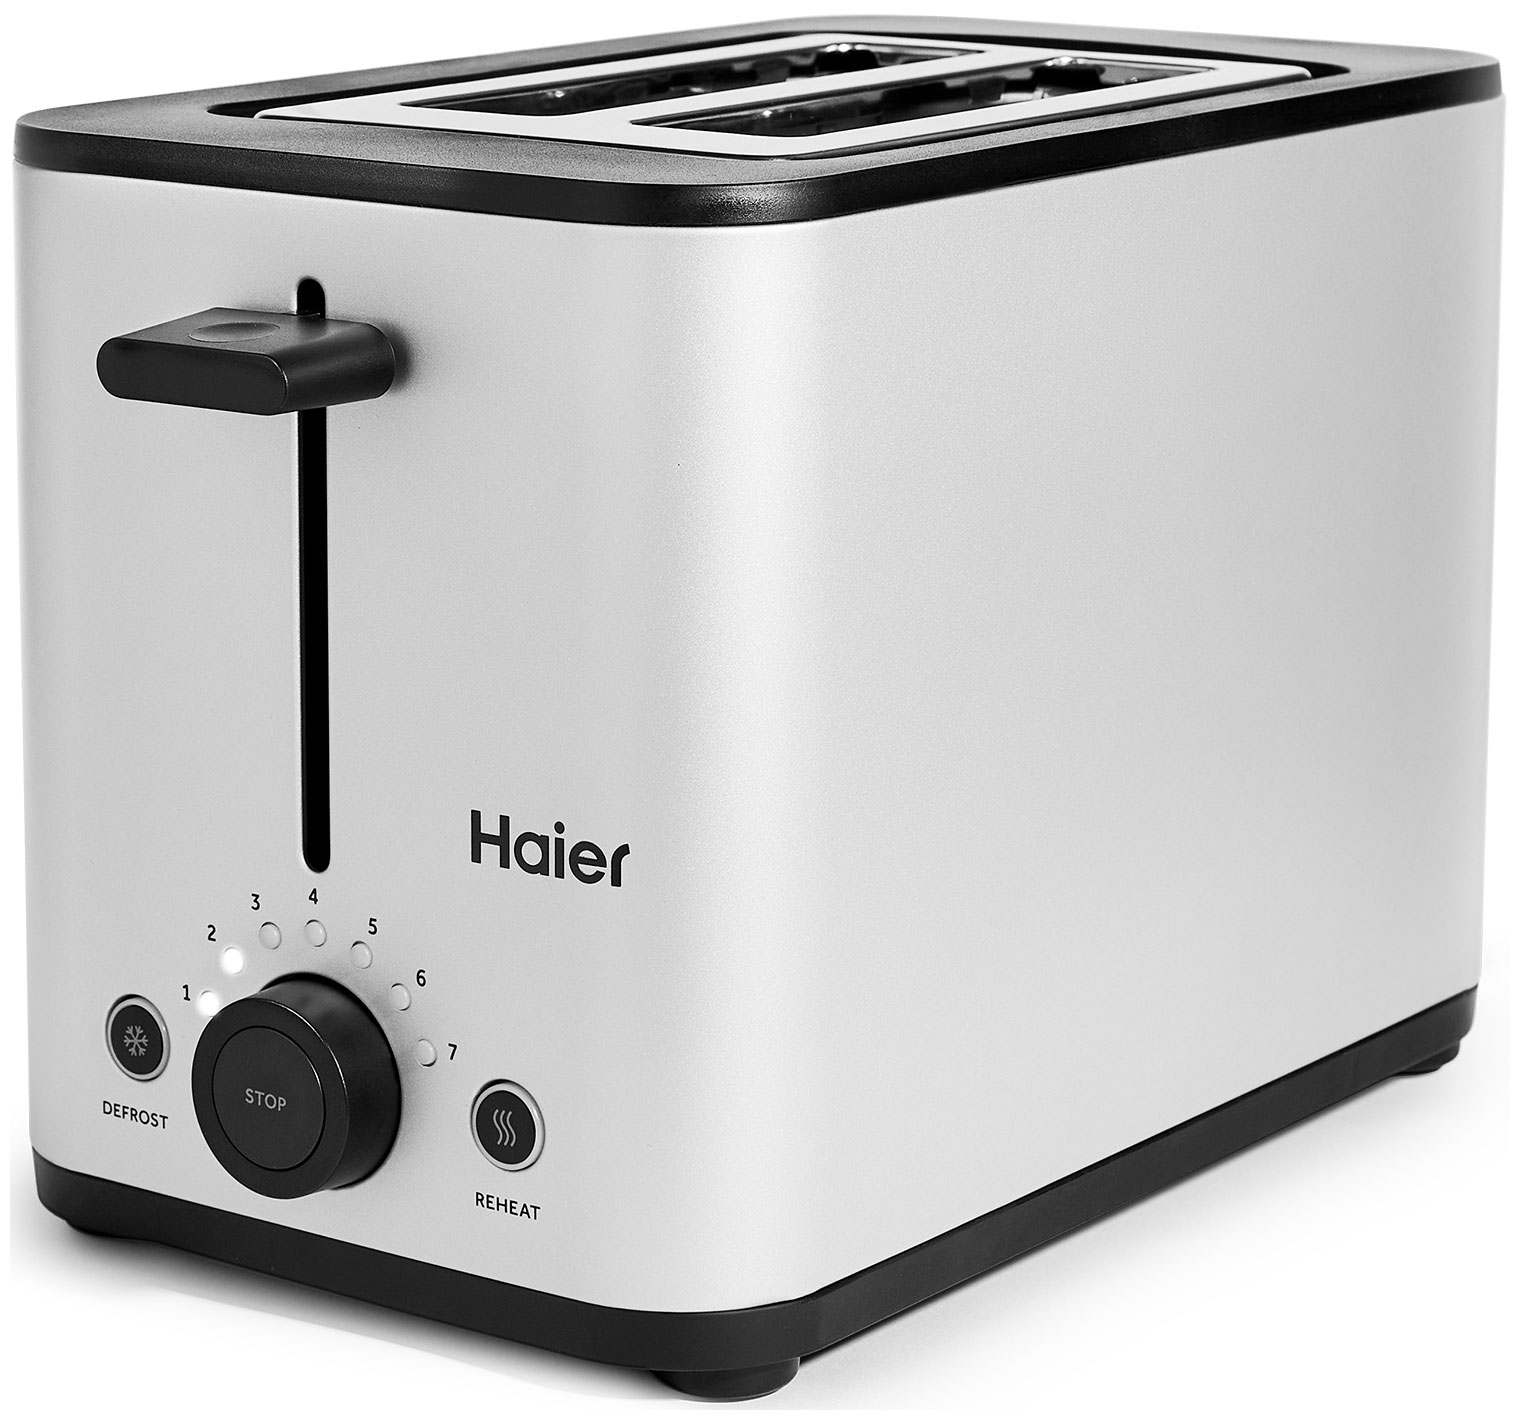 Тостер Haier HT-601 серебристый тостер gastrorag tt est a 2 серебристый